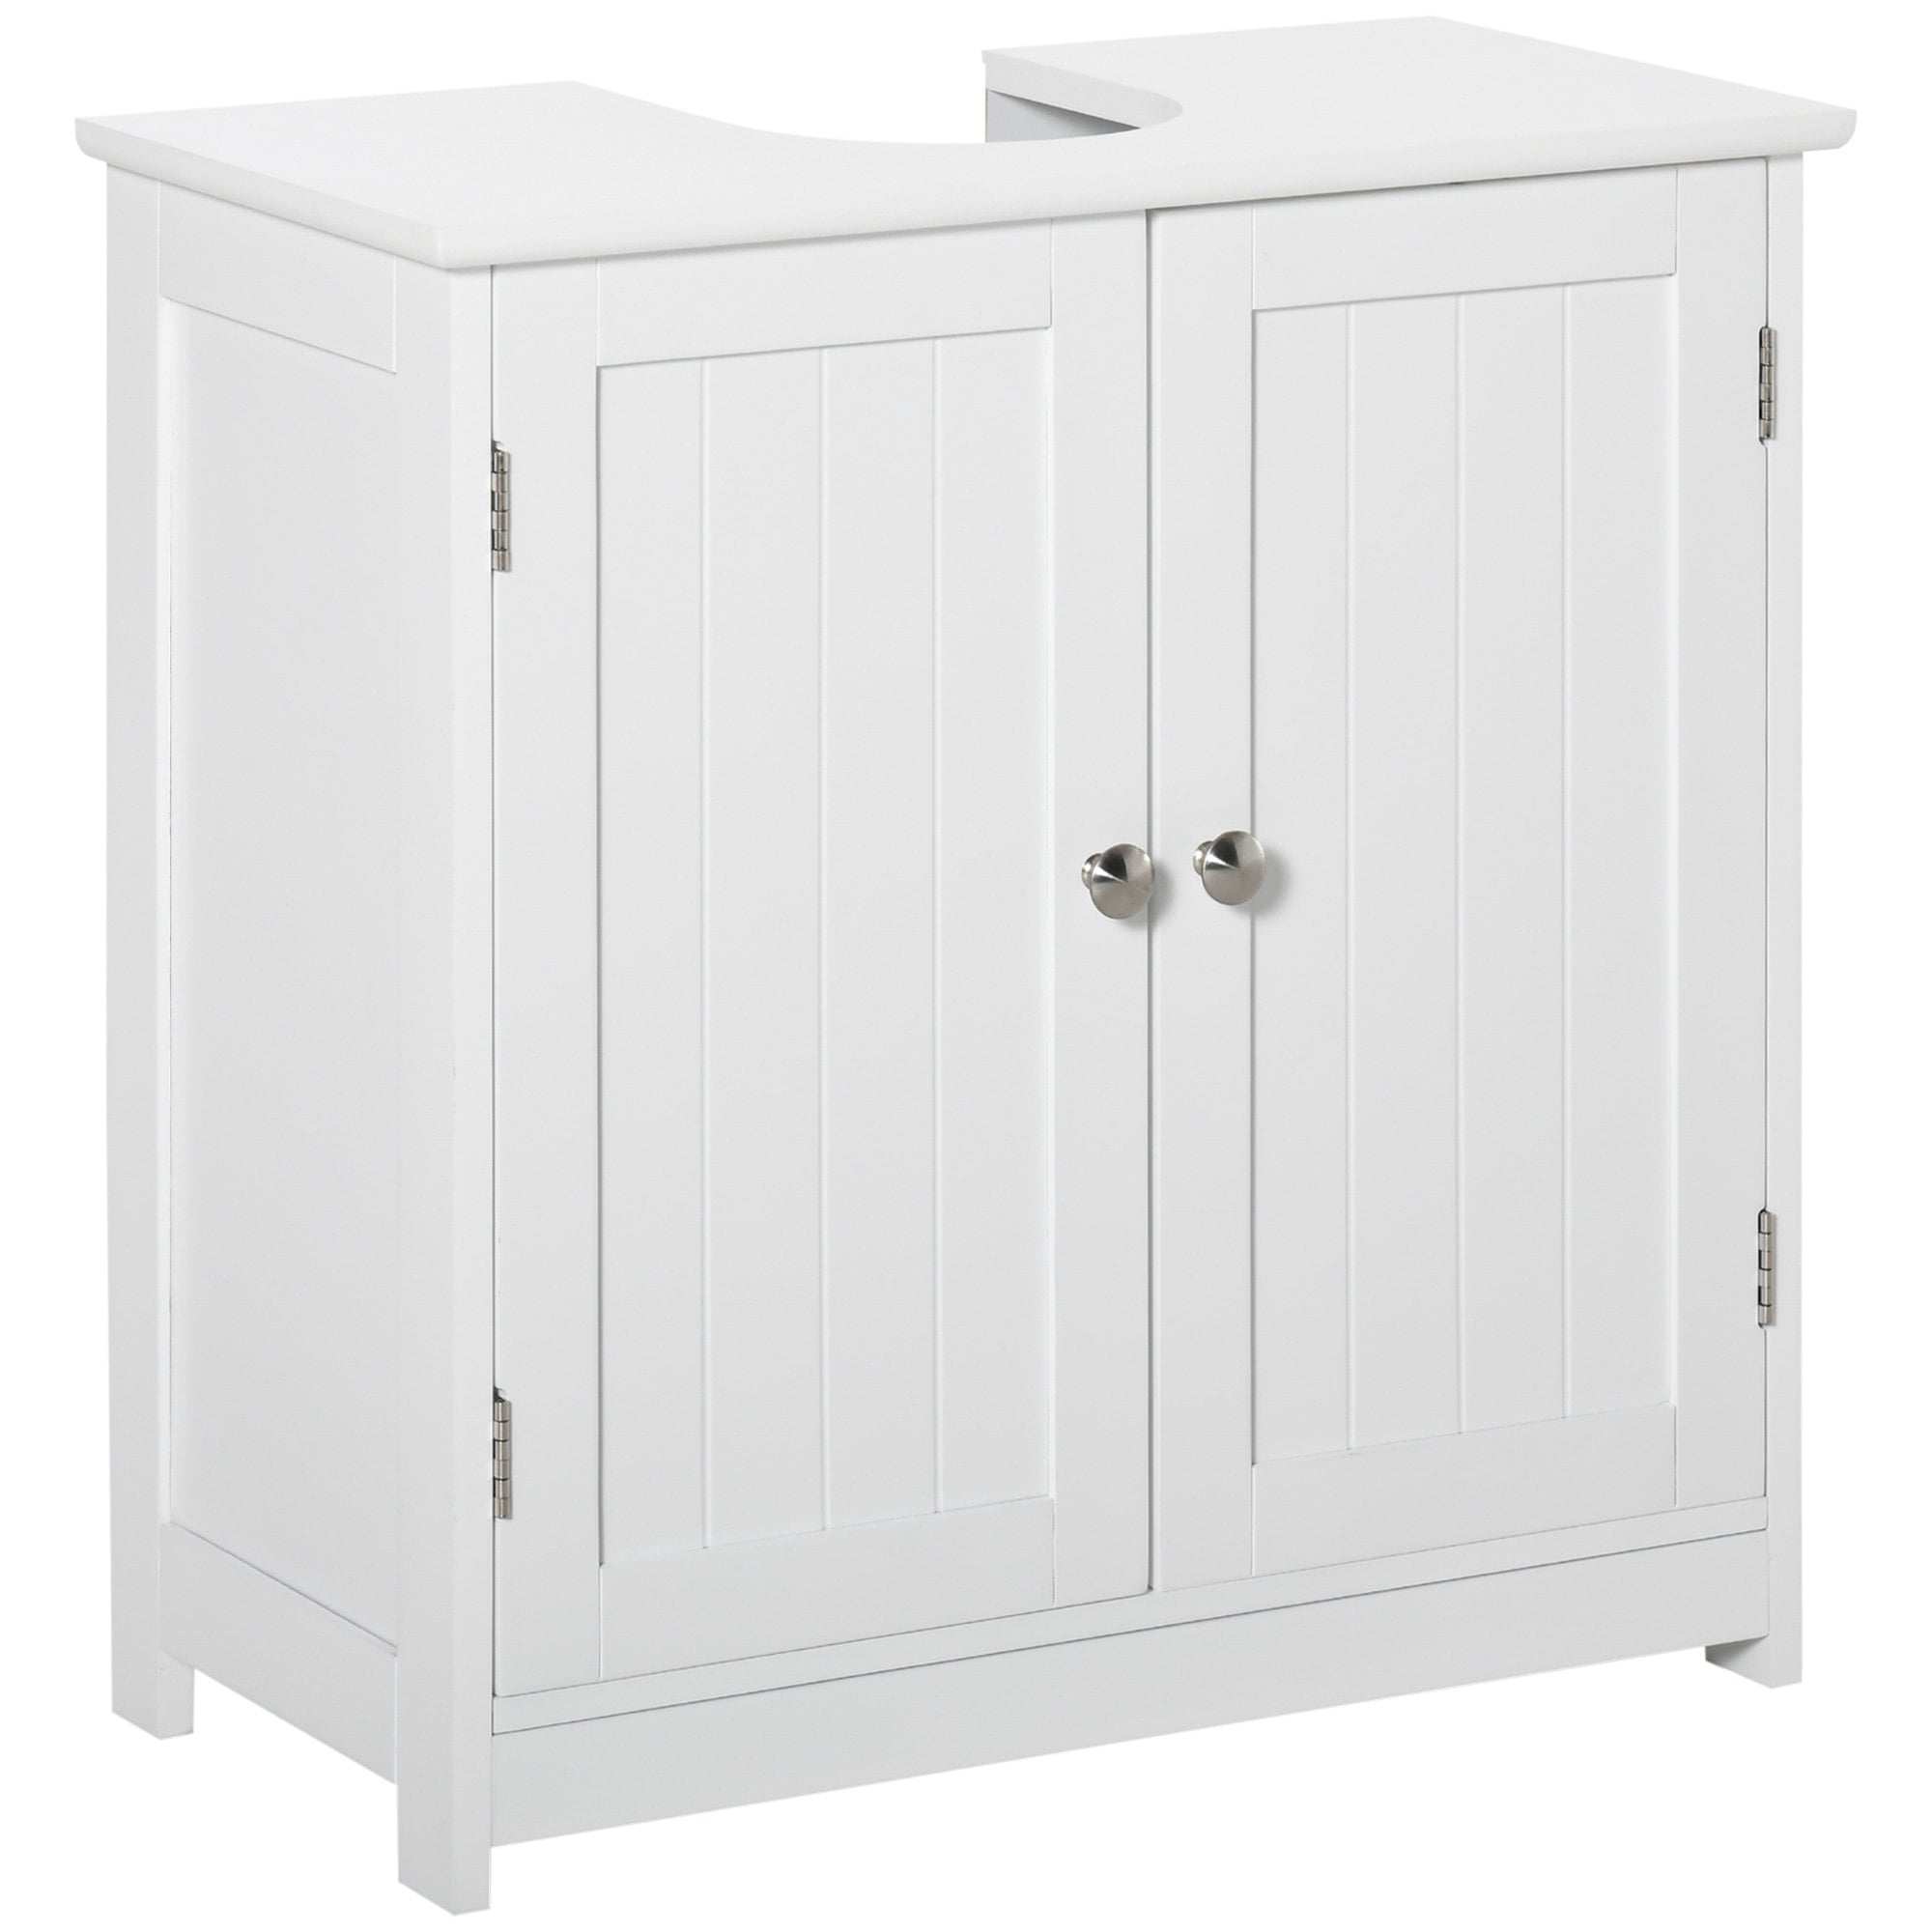 kleankin 60x60cm Under-Sink Storage Cabinet w/ Adjustable Shelf Handles Drain Hole Bathroom Cabinet Space Saver Organizer White Handle - Home Living